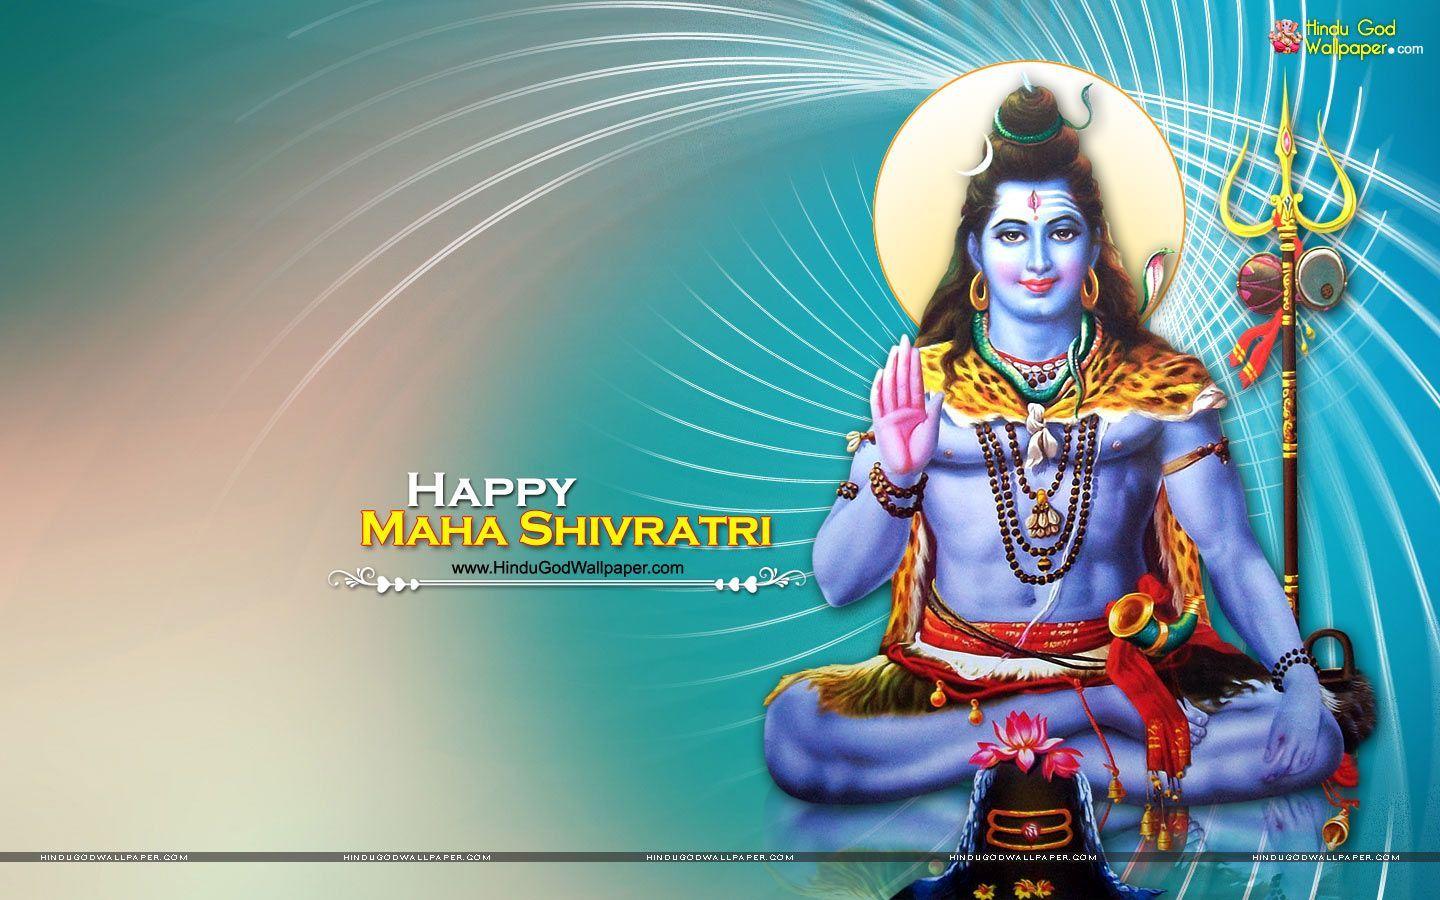 Maha Shivratri 3D Wallpaper, Photo & Image Download